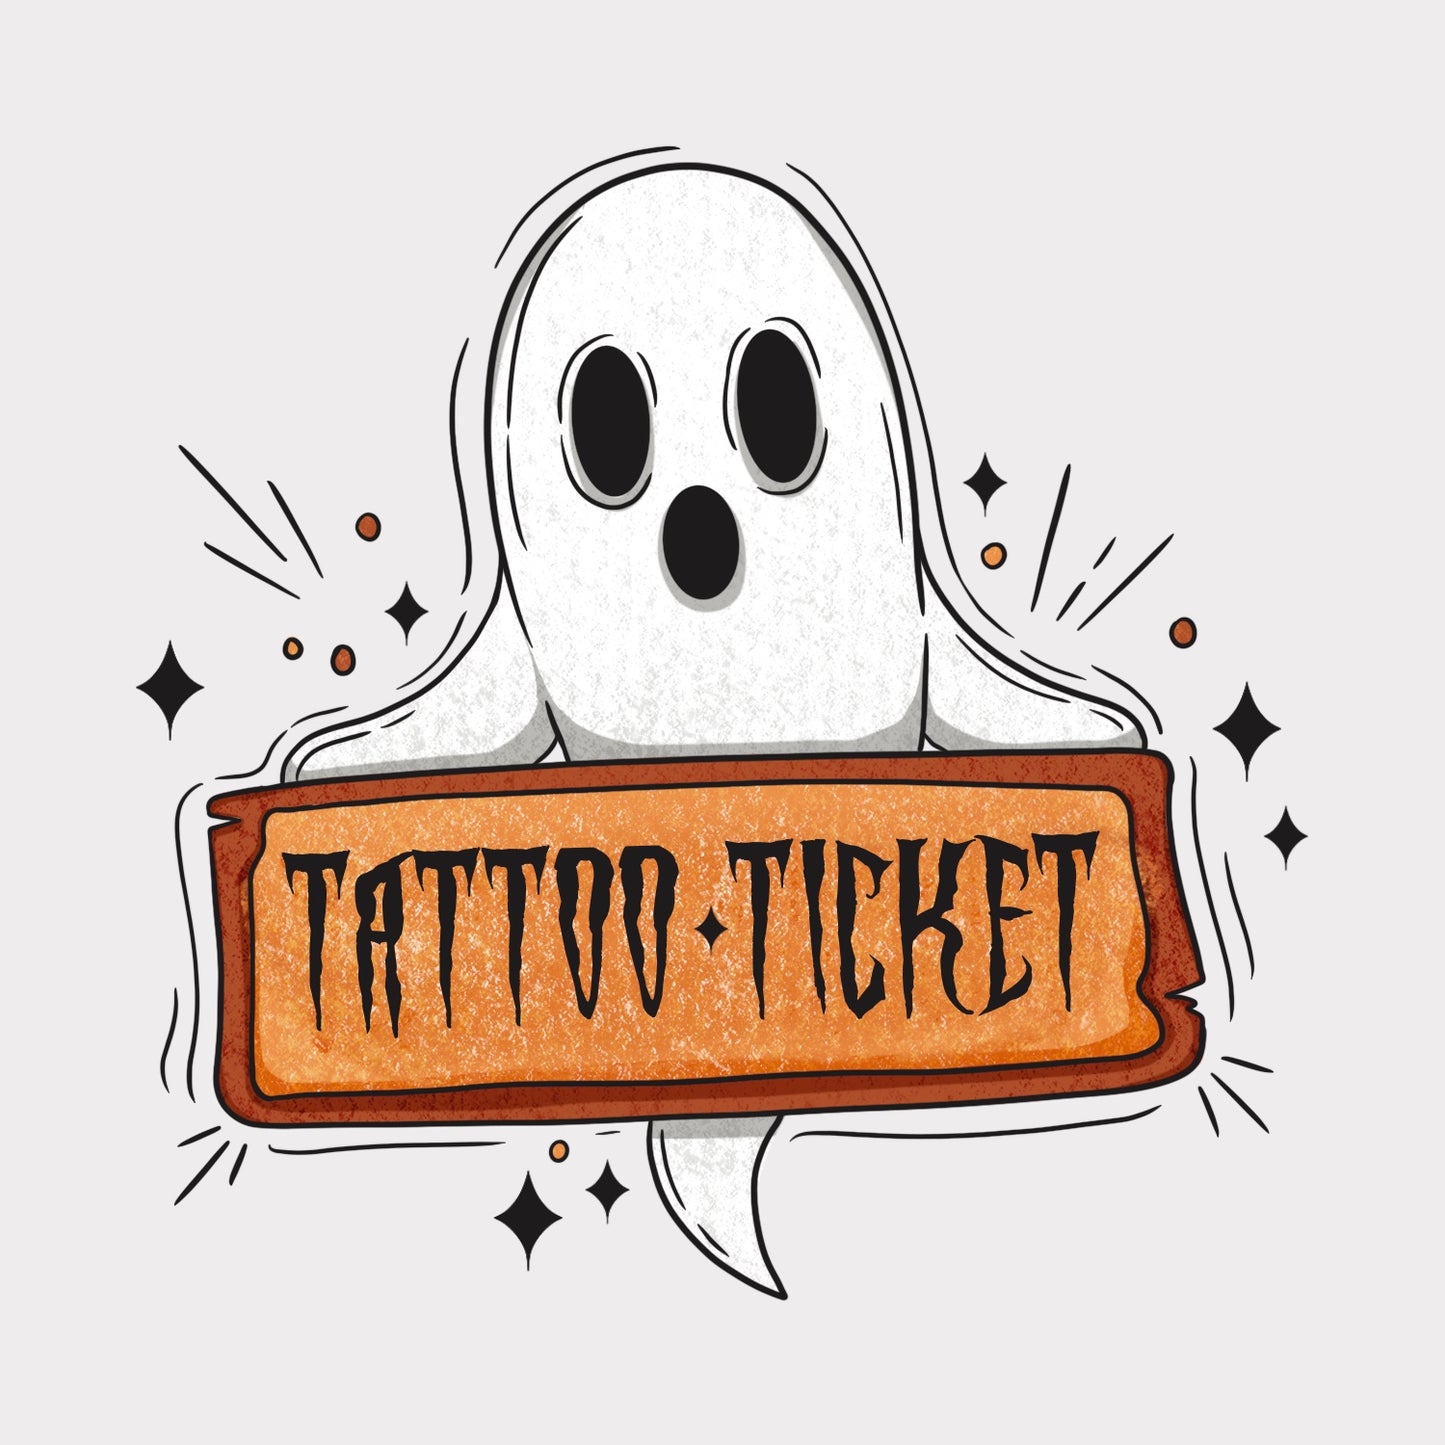 Tattoo Ticket / Tattoo Permission